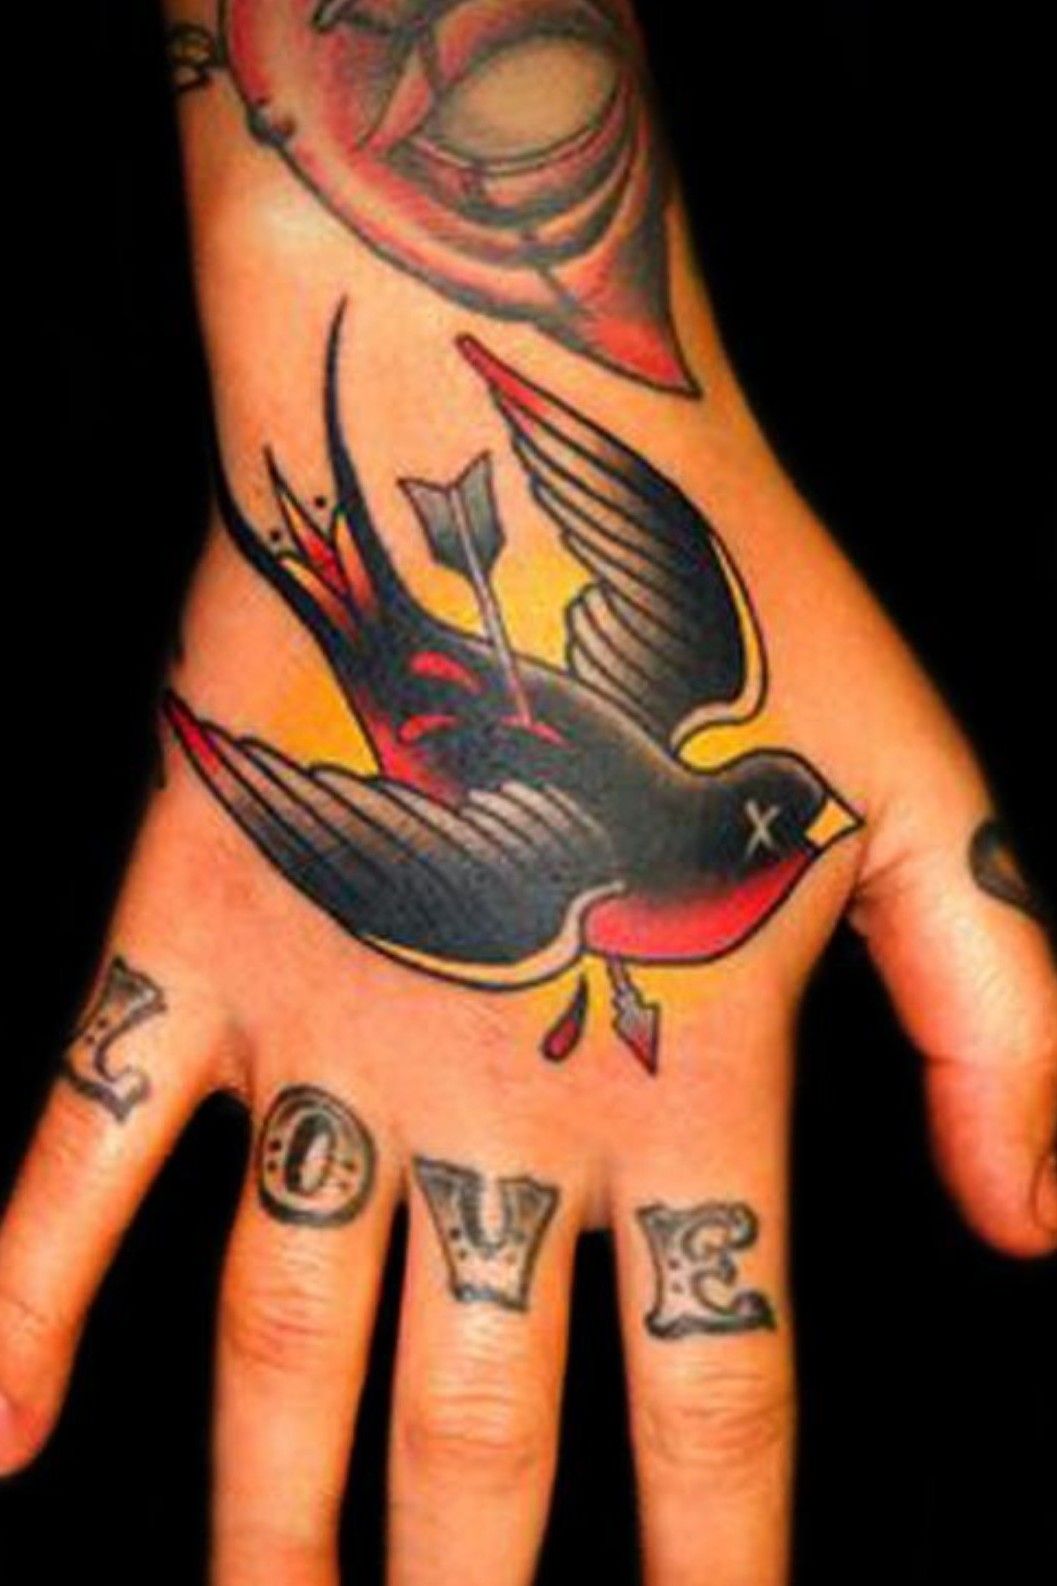 Red Letters Tattoo Parlor  tattoo tattoos tattooed tattooer tattooart  tattooartist traditional tradtattoo traditionaltattoo  americantraditional blackwork blackworkers boldwillhold art artist  blacklinesmatter swallow sparrow bird 